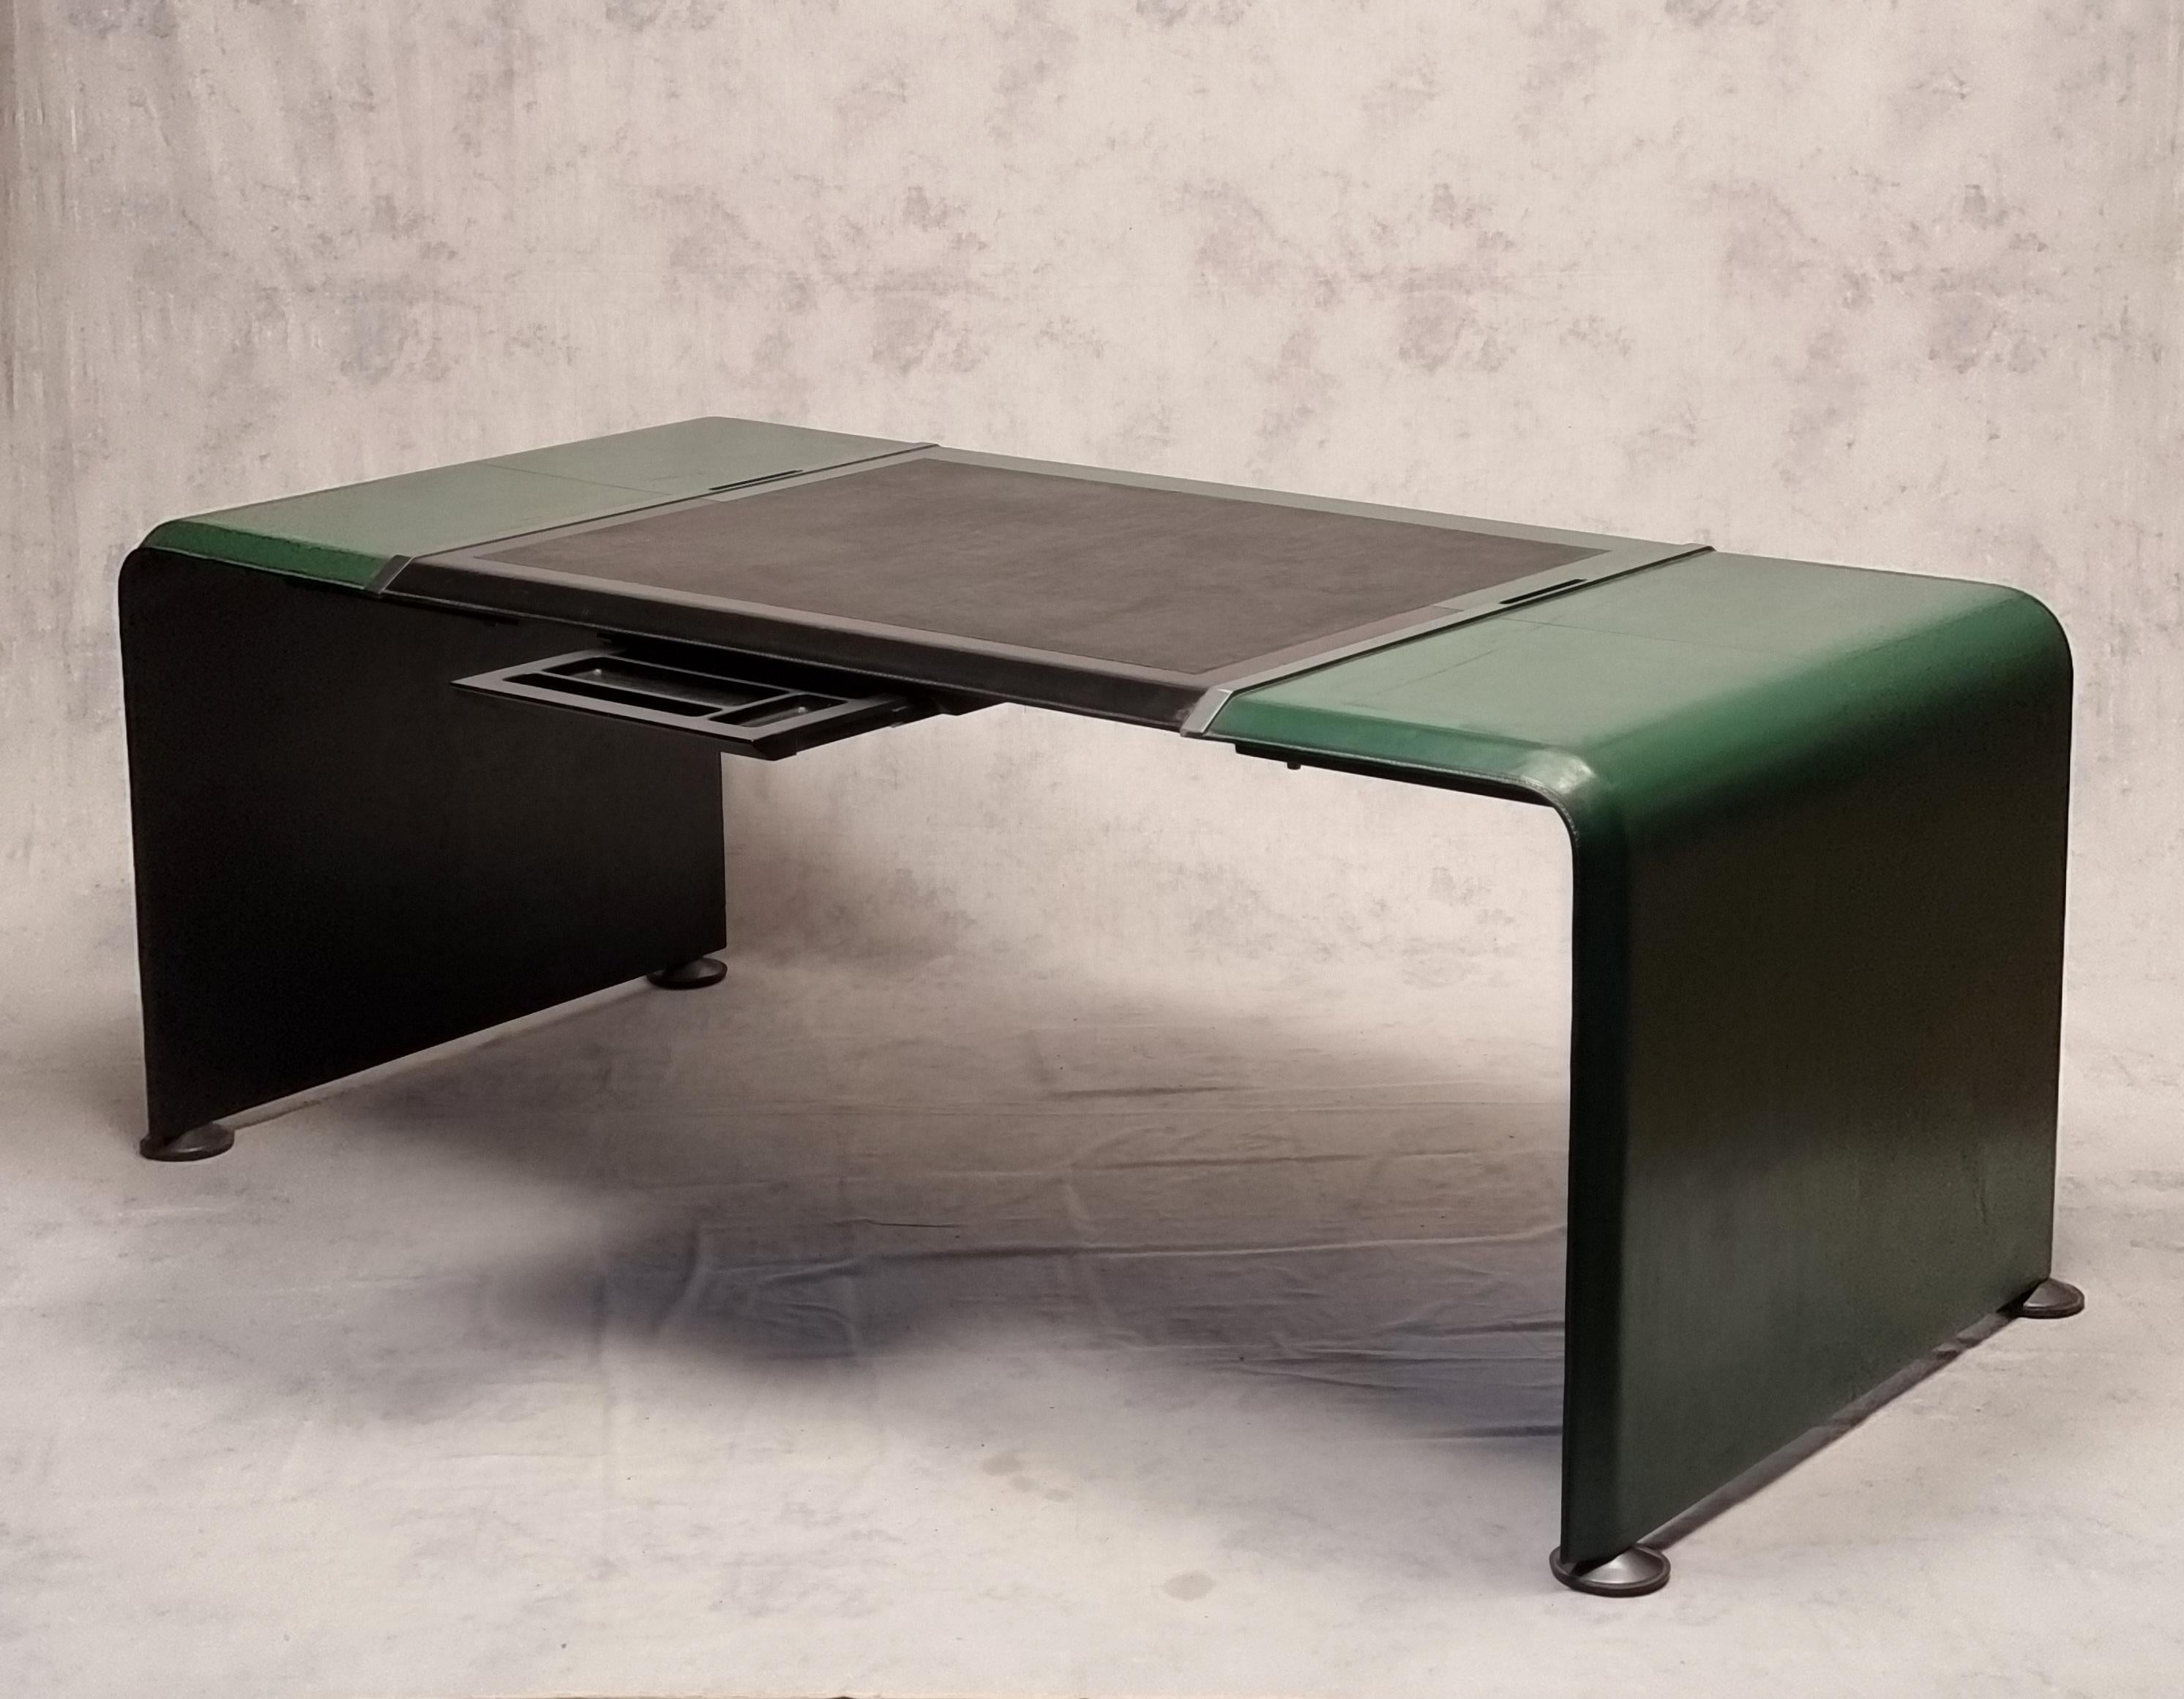 Sehr seltener Schreibtisch für Führungskräfte, entworfen und veröffentlicht von Matteo Grassi. Es ist ein außergewöhnliches, fast einzigartiges Stück, das außen komplett aus grünem und innen aus schwarzem Leder gefertigt ist. Dieser Schreibtisch